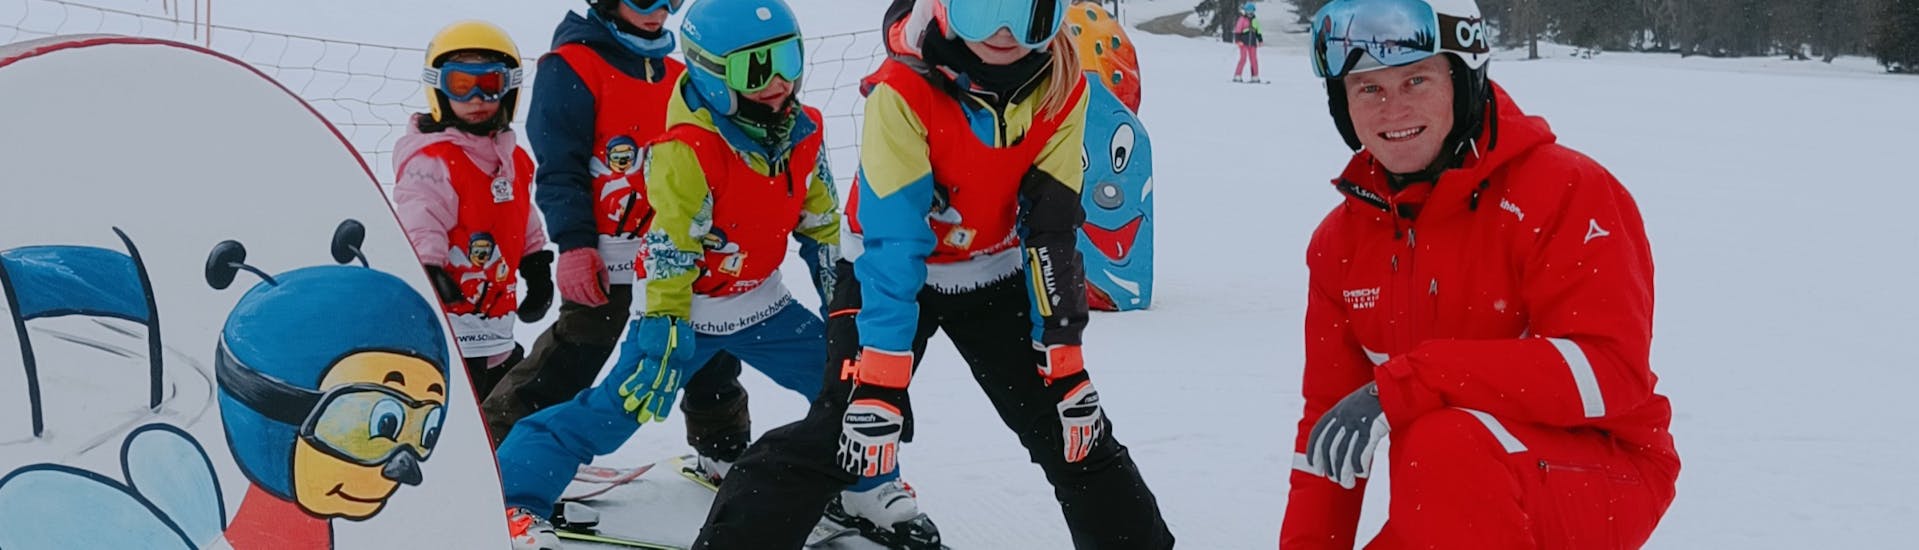 Clases de esquí para niños a partir de 4 años para avanzados con Skischule Kreischberg - Mayer.